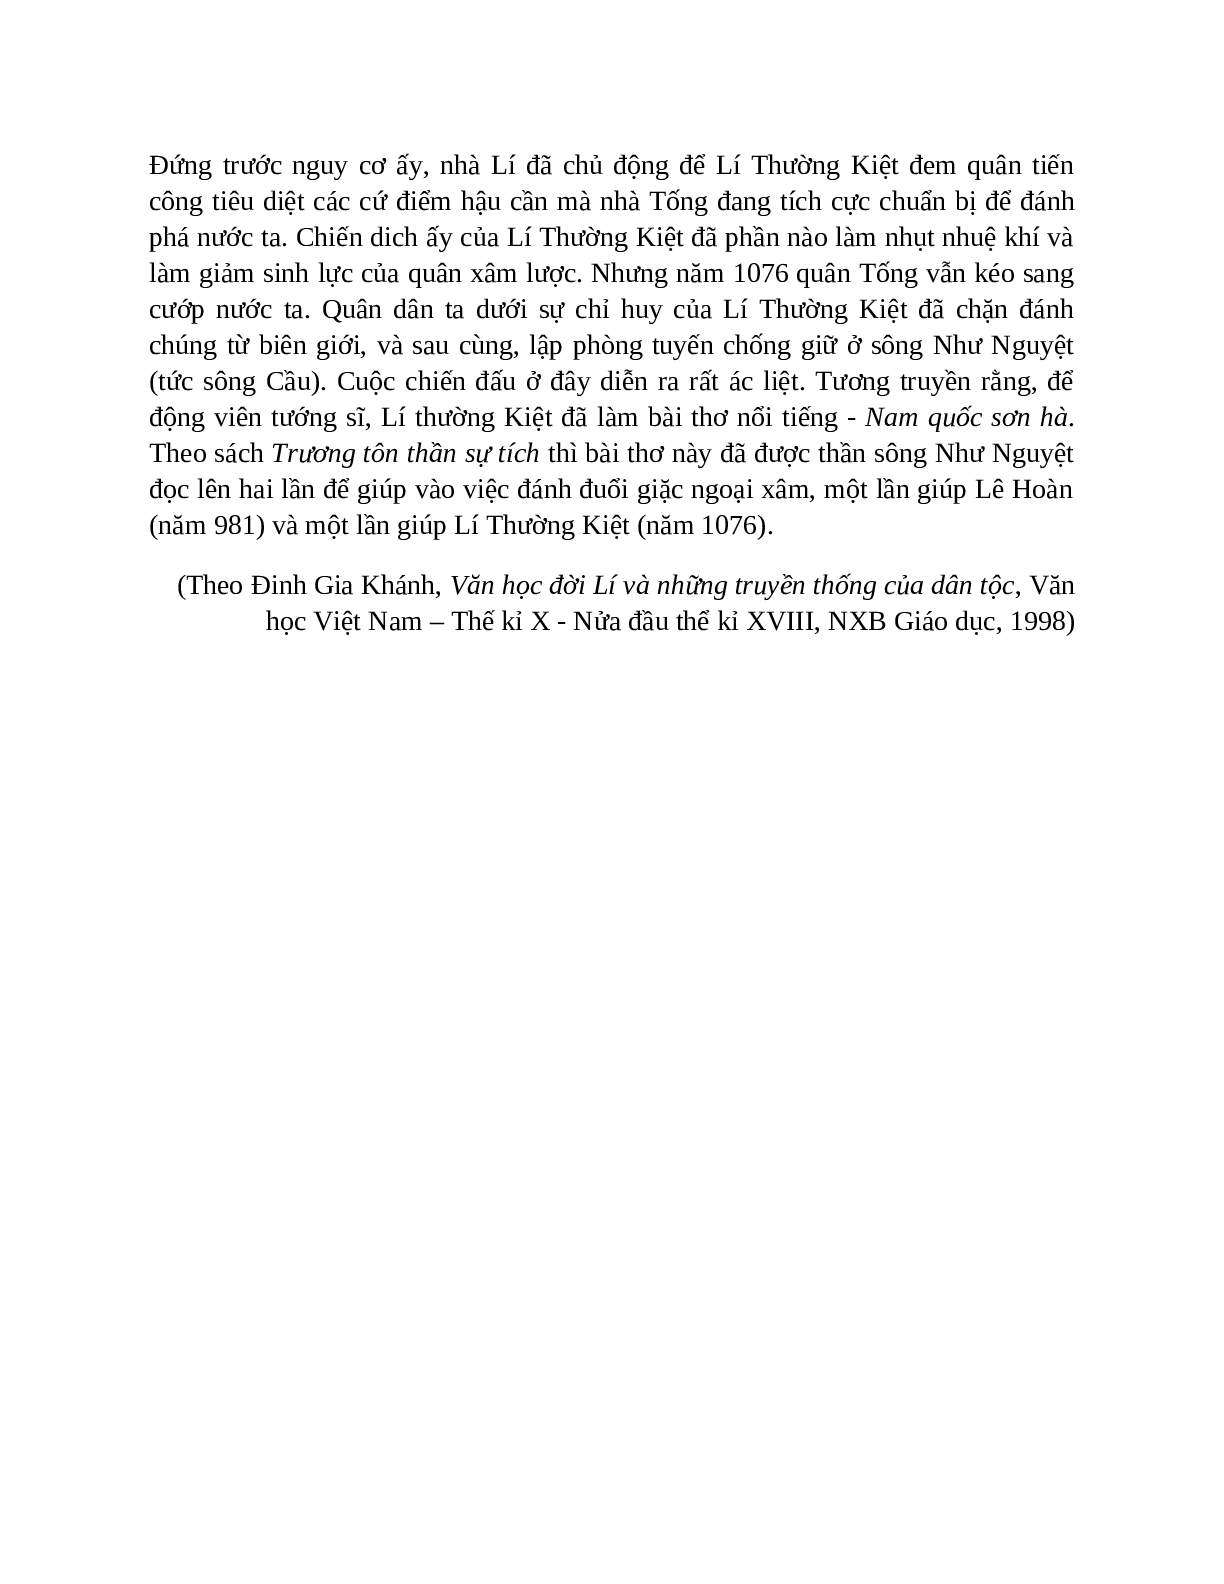 Sơ đồ tư duy bài Sông núi nước Nam dễ nhớ, ngắn nhất - Ngữ văn lớp 7 (trang 6)